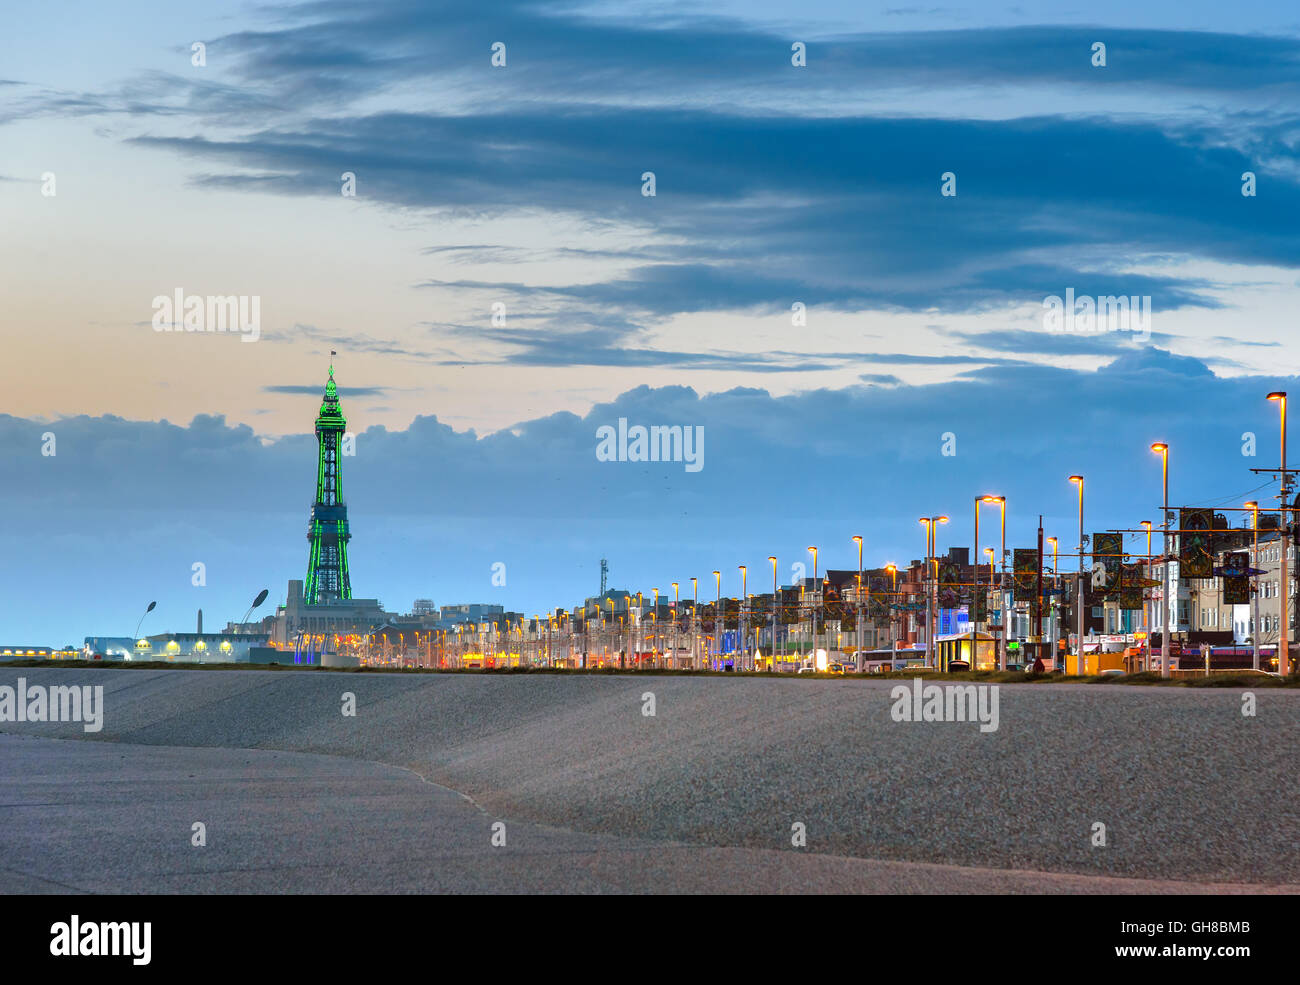 Blackpool tower beleuchtet in grünes Licht am Ende der Promenade. Stockfoto